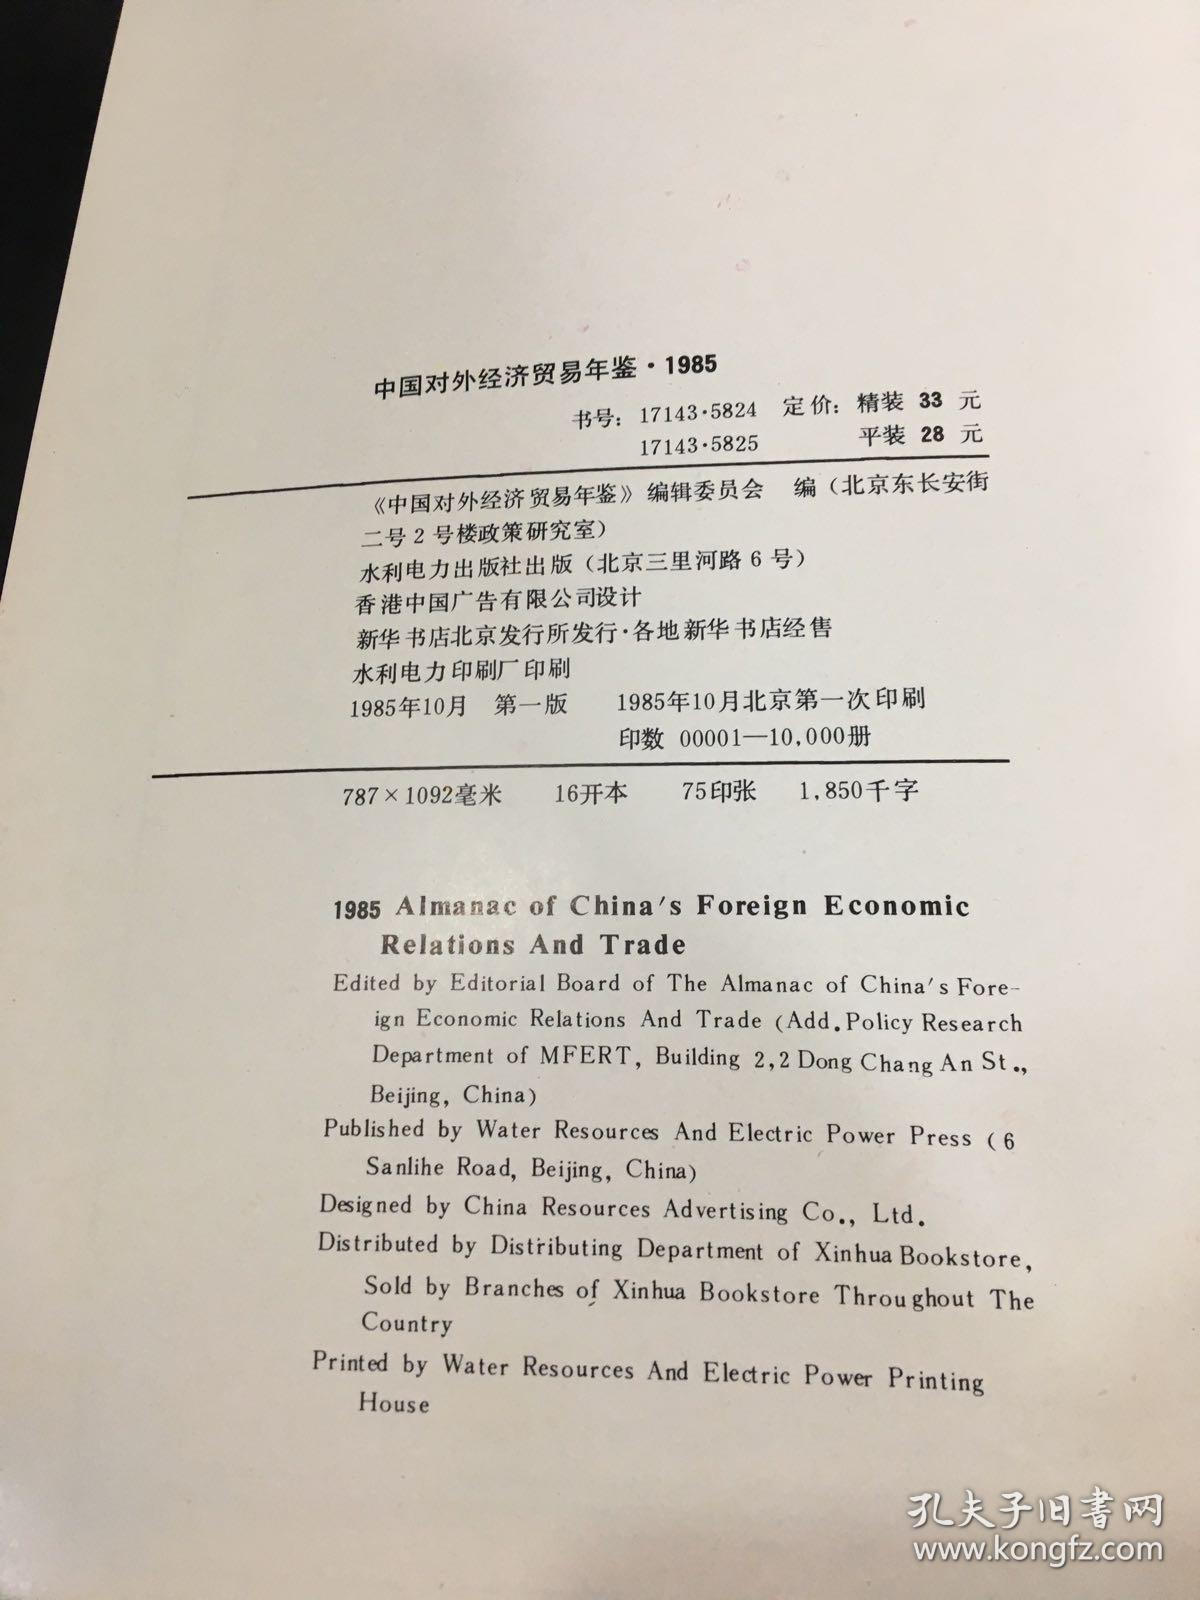 中国对外经济贸易年鉴 1985（馆藏书；扉页、书口有印章；书体轻微磨损；书口略脏）